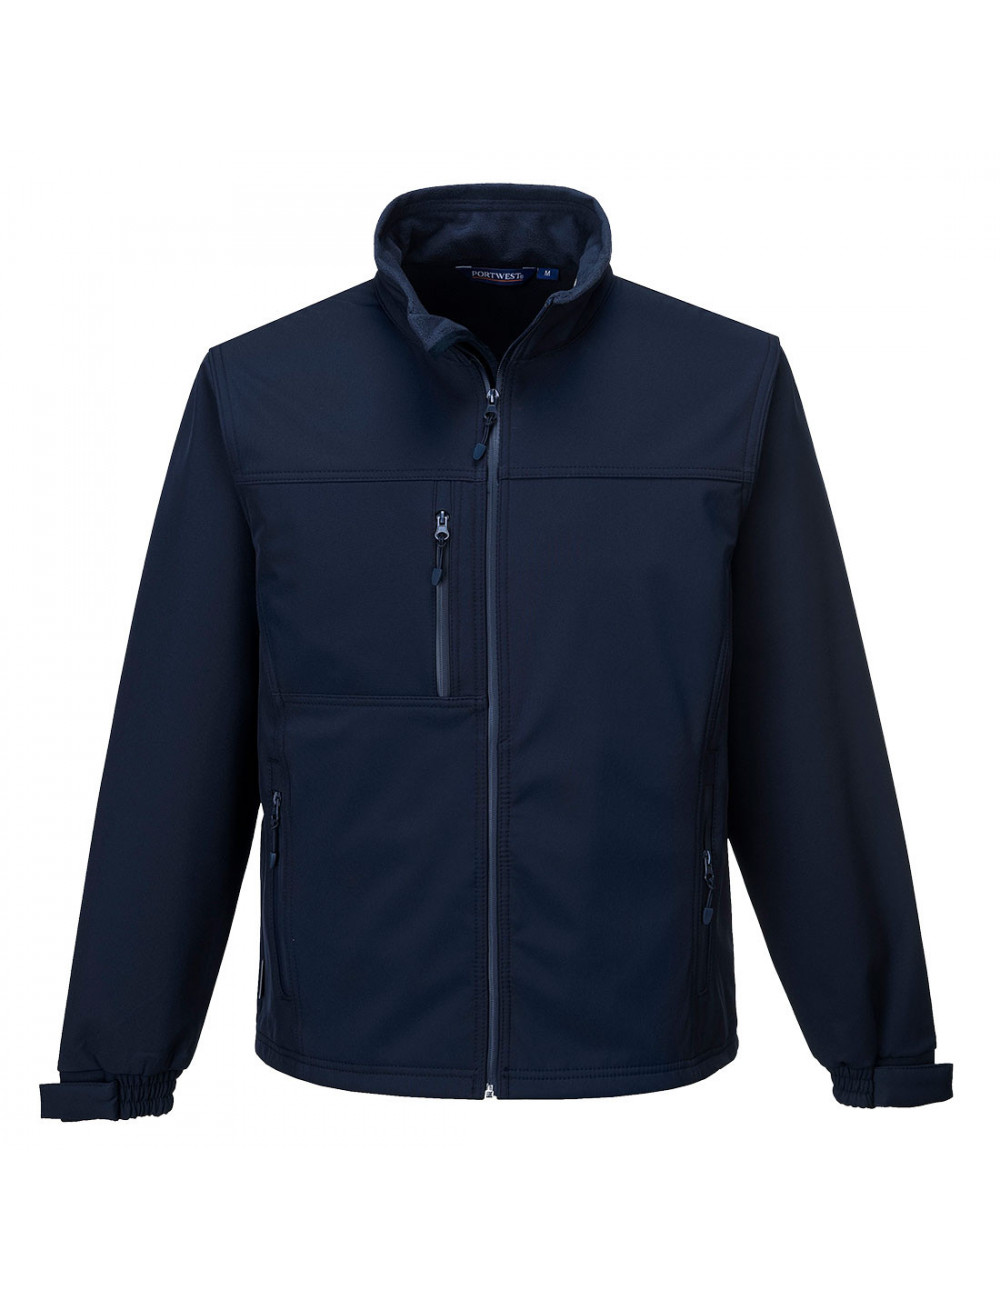 Softshell jacket (3l). navy Portwest